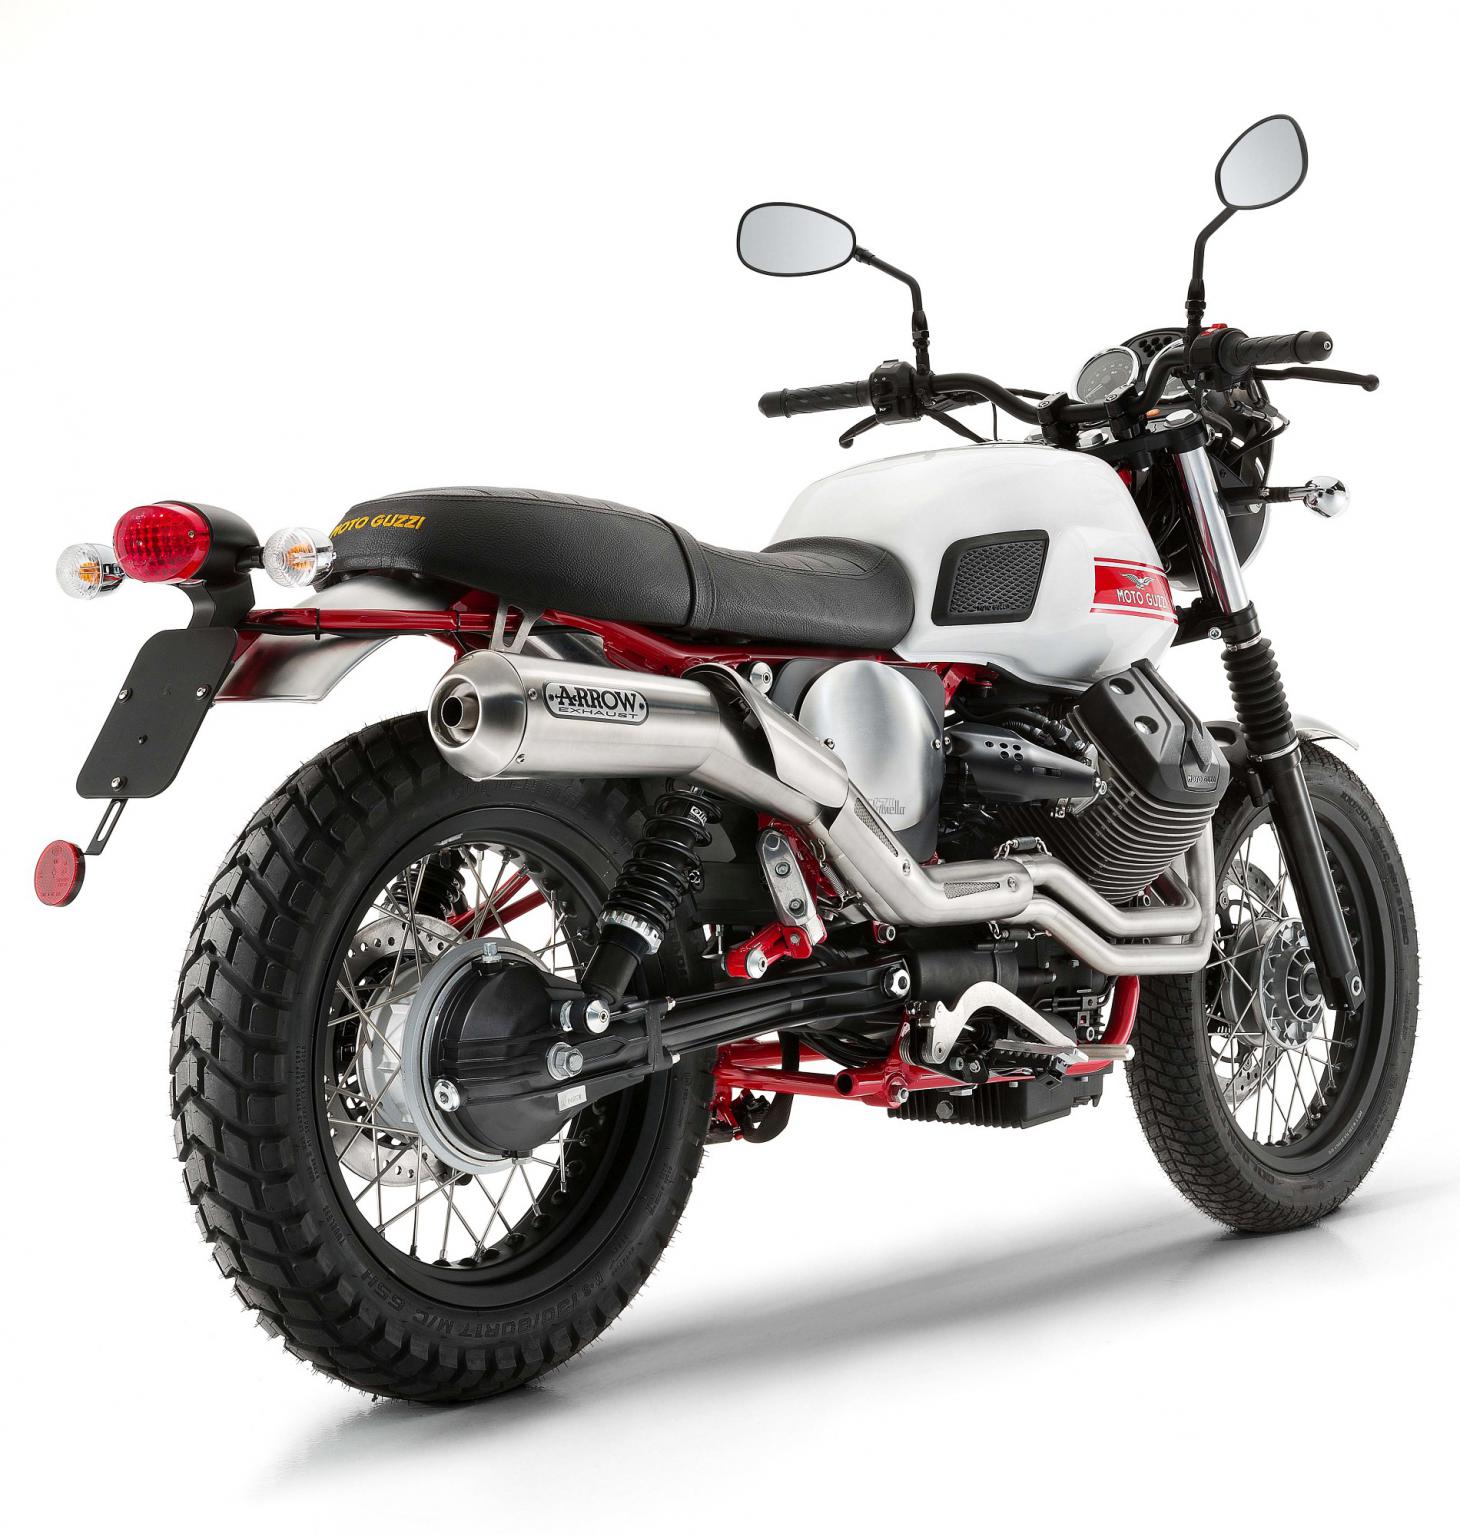 Moto-Guzzi 750 V7 II Stornello 2016 - Fiche moto - Motoplanete